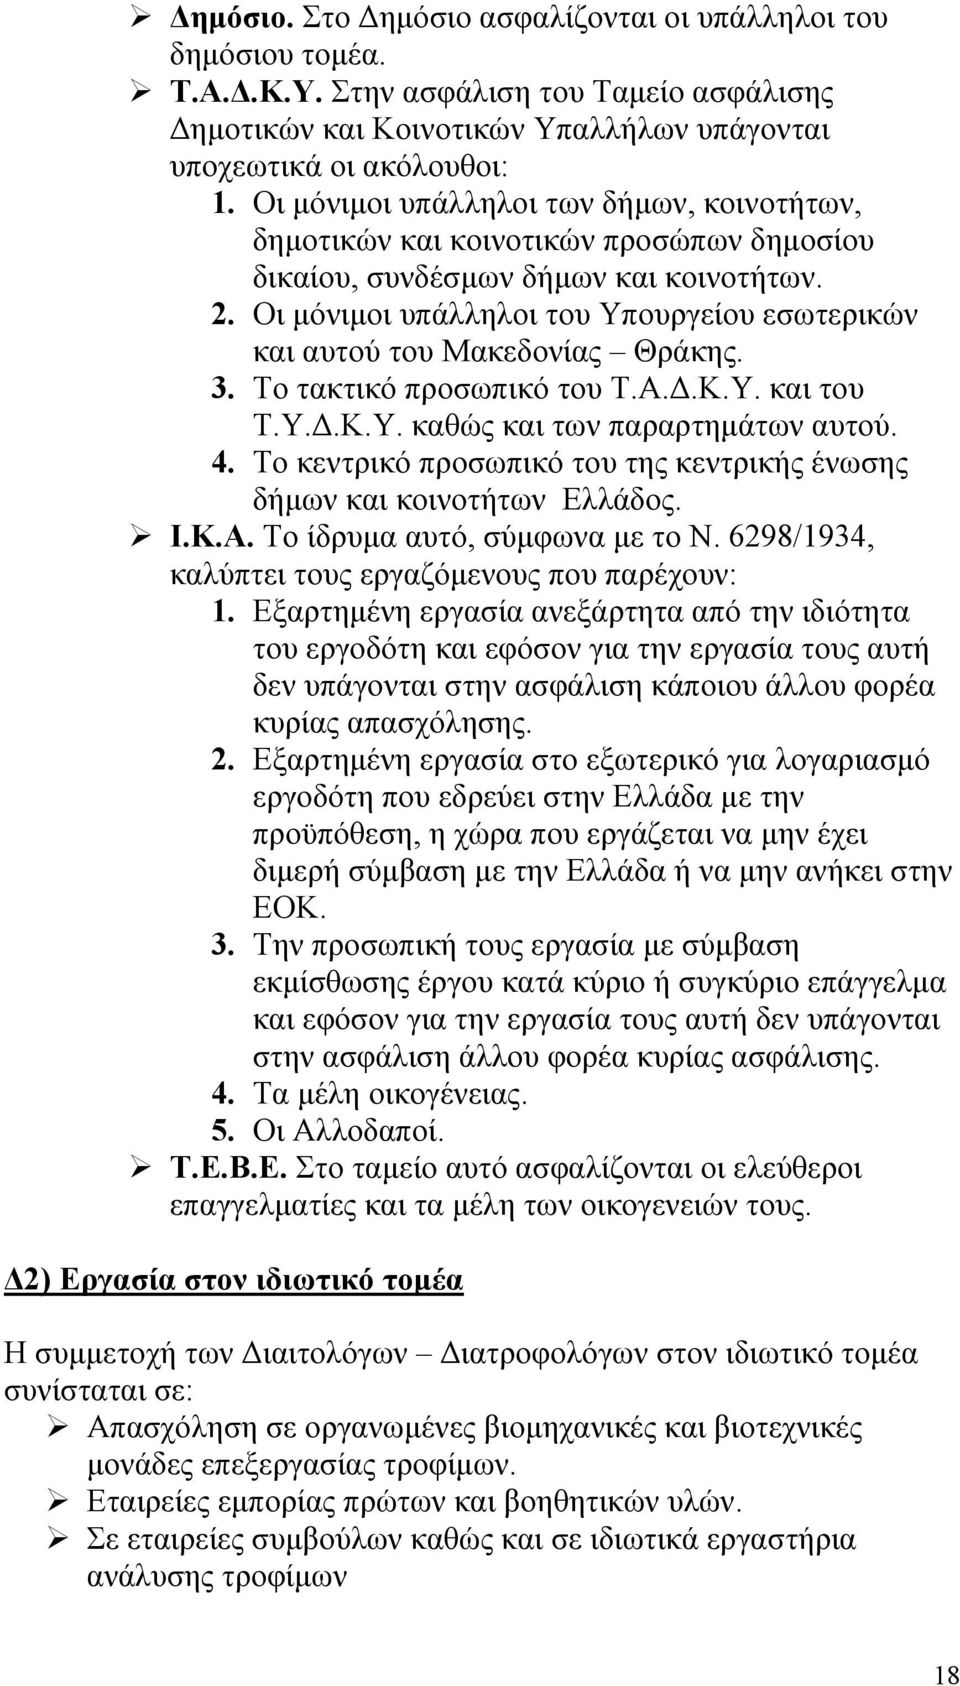 Οι μόνιμοι υπάλληλοι του Υπουργείου εσωτερικών και αυτού του Μακεδονίας Θράκης. 3. Το τακτικό προσωπικό του Τ.Α.Δ.Κ.Υ. και του Τ.Υ.Δ.Κ.Υ. καθώς και των παραρτημάτων αυτού. 4.